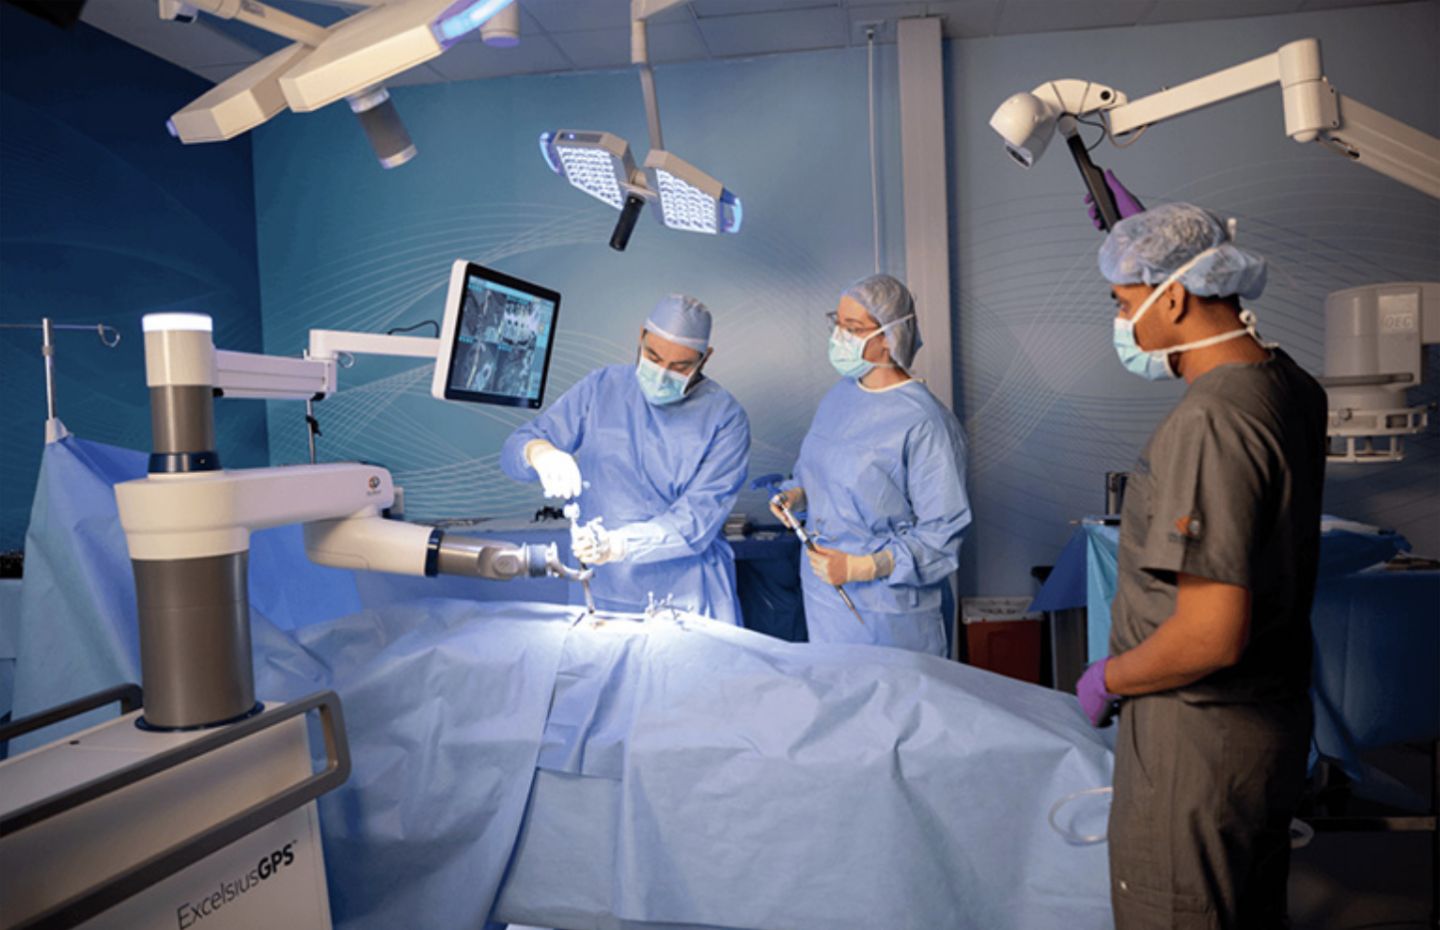 Excelsius 机器人脊柱手术系统在 20 家医院工作